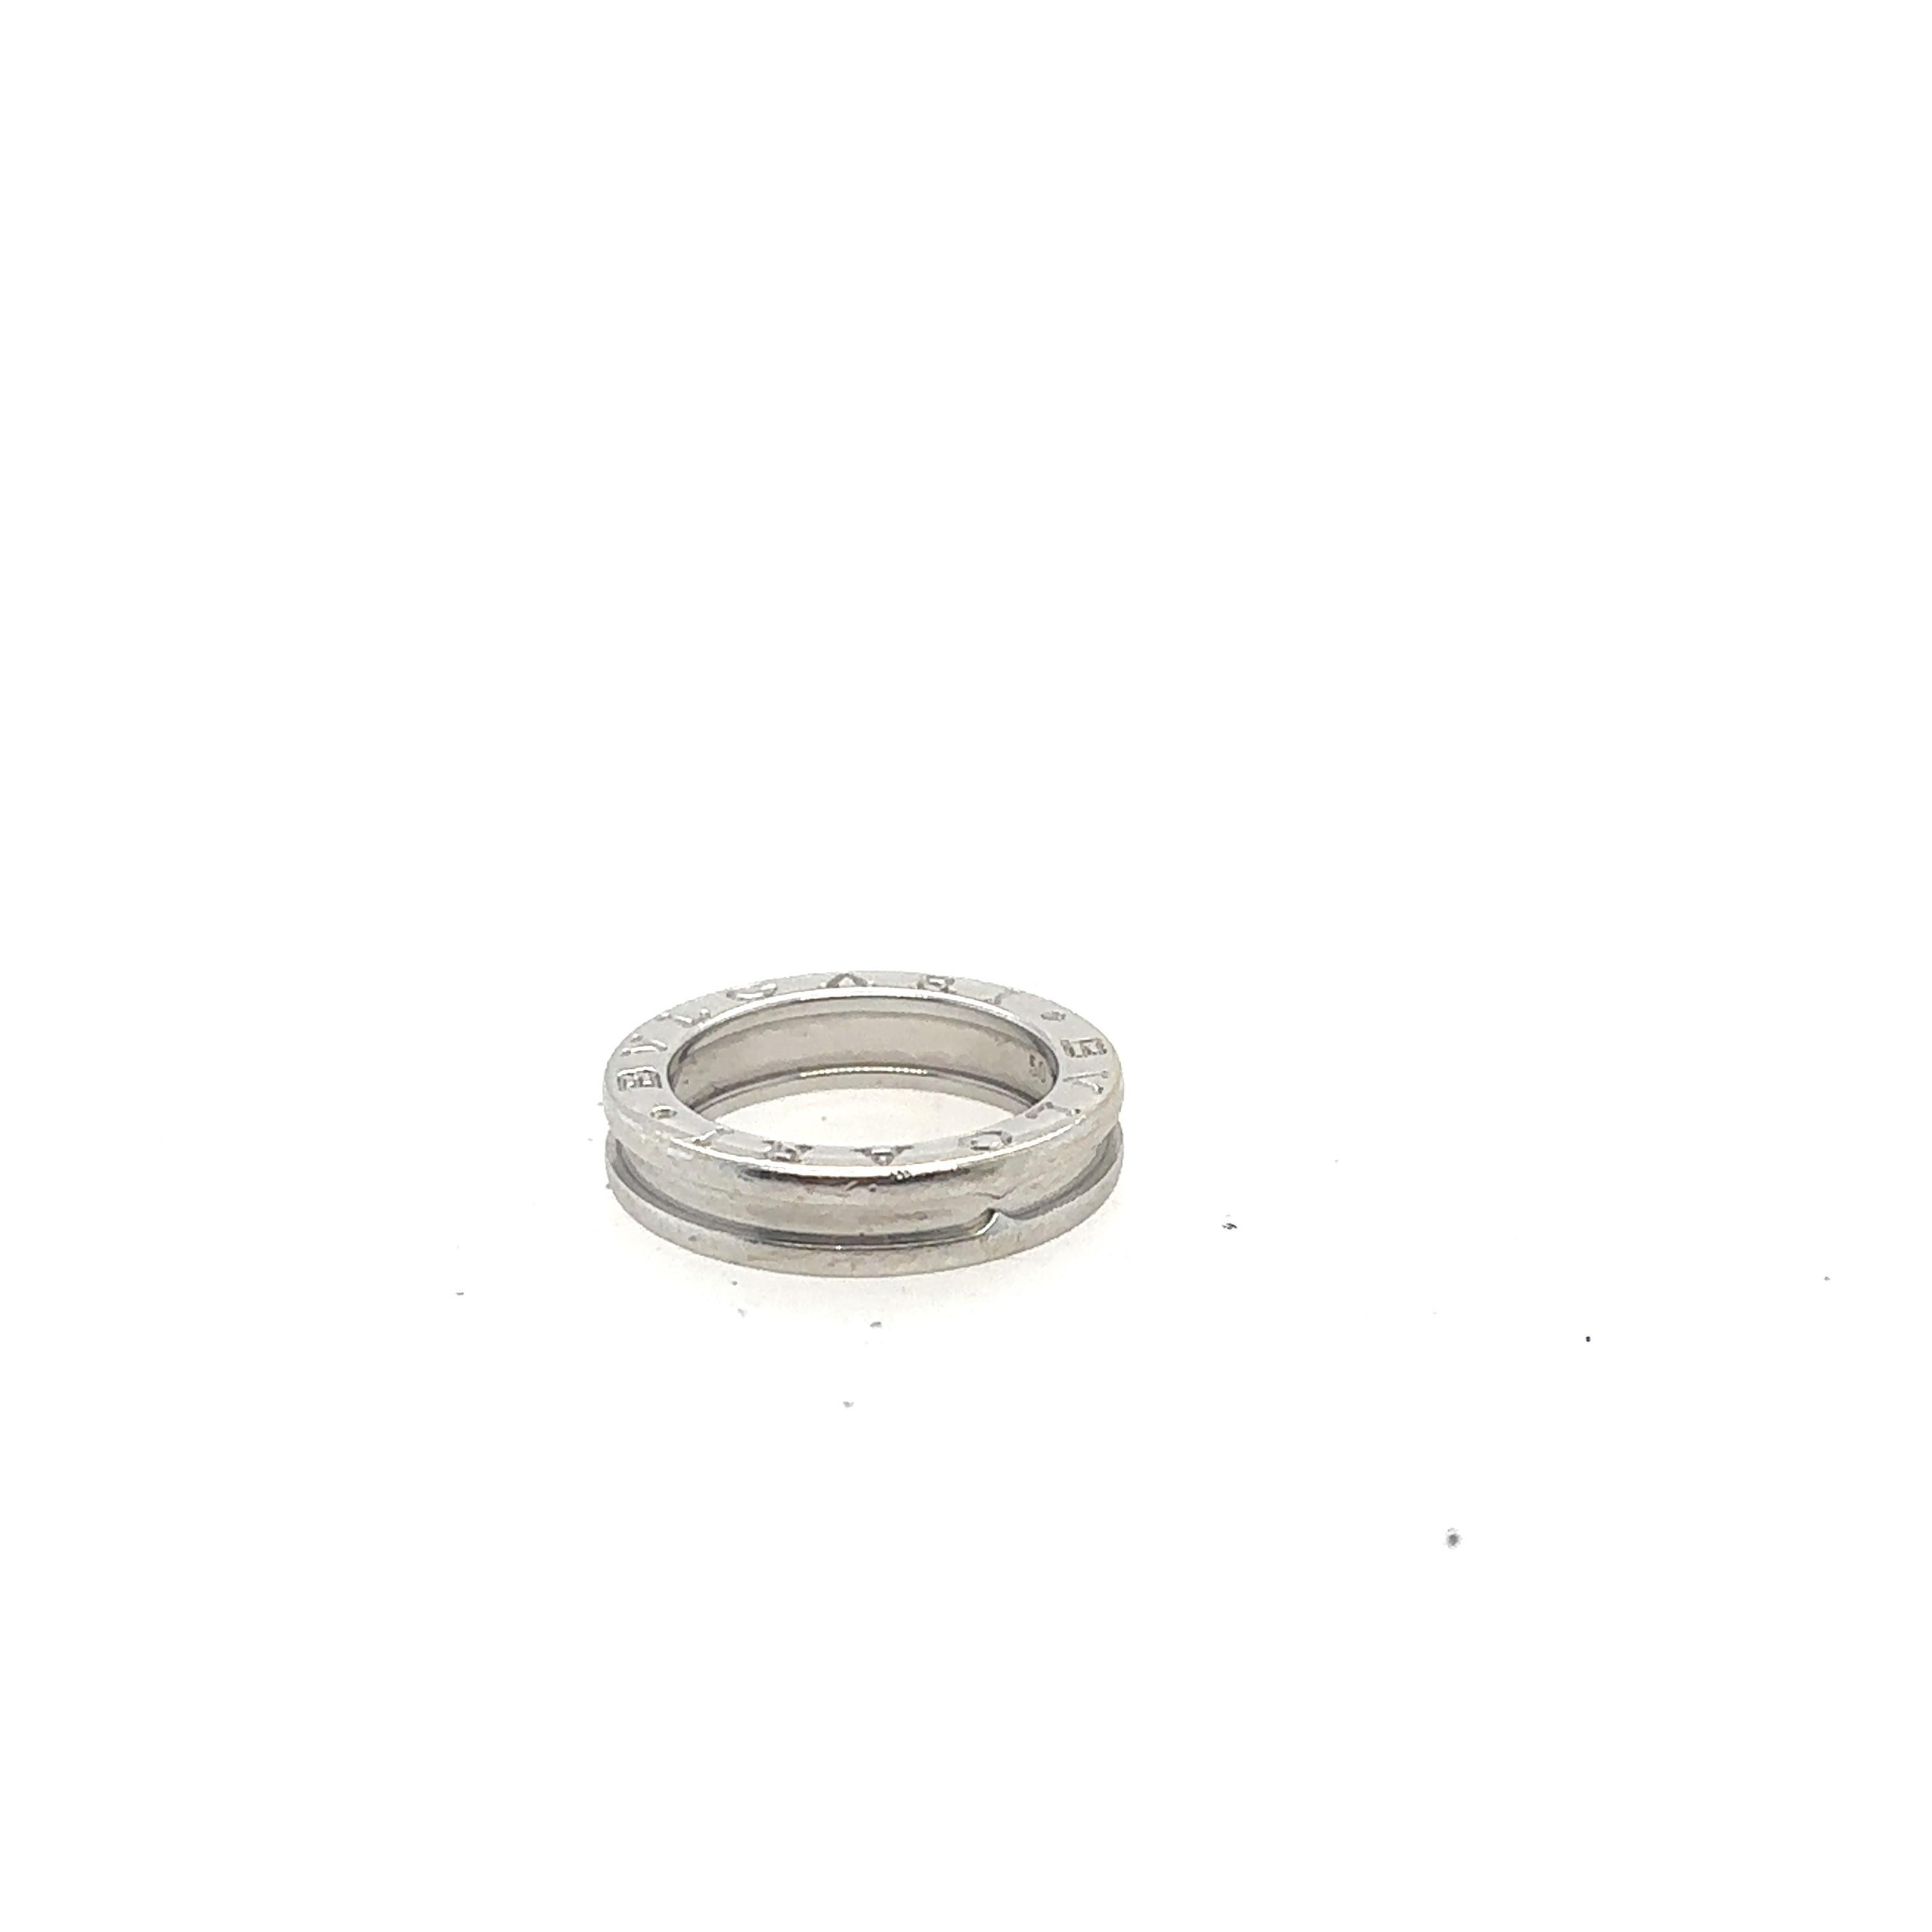 De la collection BVULGARI B Zero, un bracelet simple de 5 mm en or blanc 18 carats. Estampillé BVULGARI sur le dessus de l'anneau, taille 5 et poids total de 5,8 grammes.